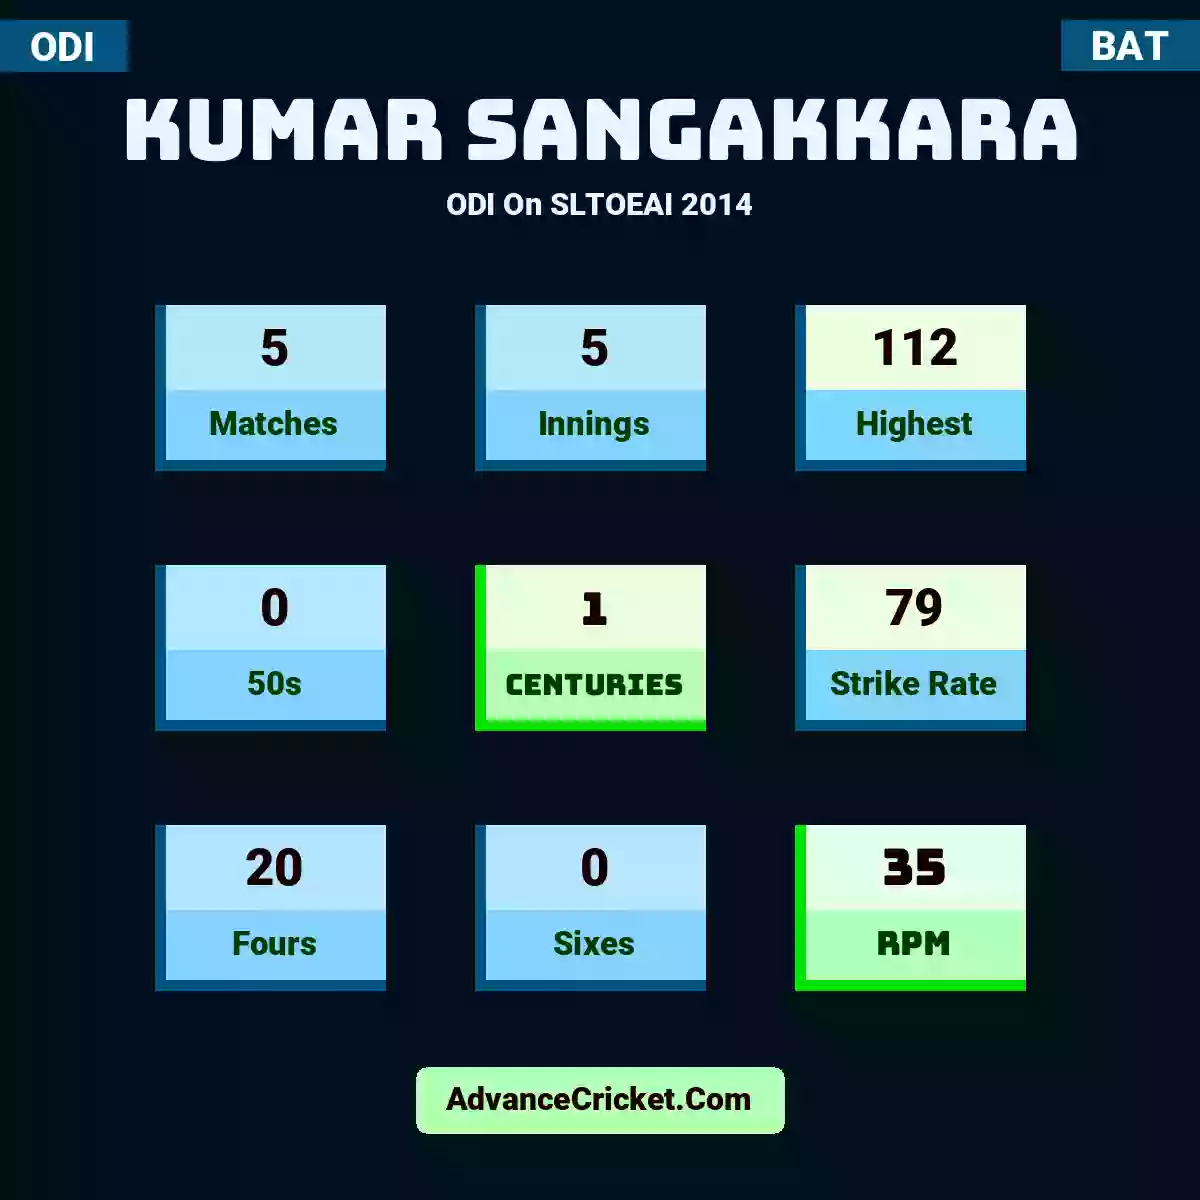 Kumar Sangakkara ODI  On SLTOEAI 2014, Kumar Sangakkara played 5 matches, scored 112 runs as highest, 0 half-centuries, and 1 centuries, with a strike rate of 79. K.Sangakkara hit 20 fours and 0 sixes, with an RPM of 35.